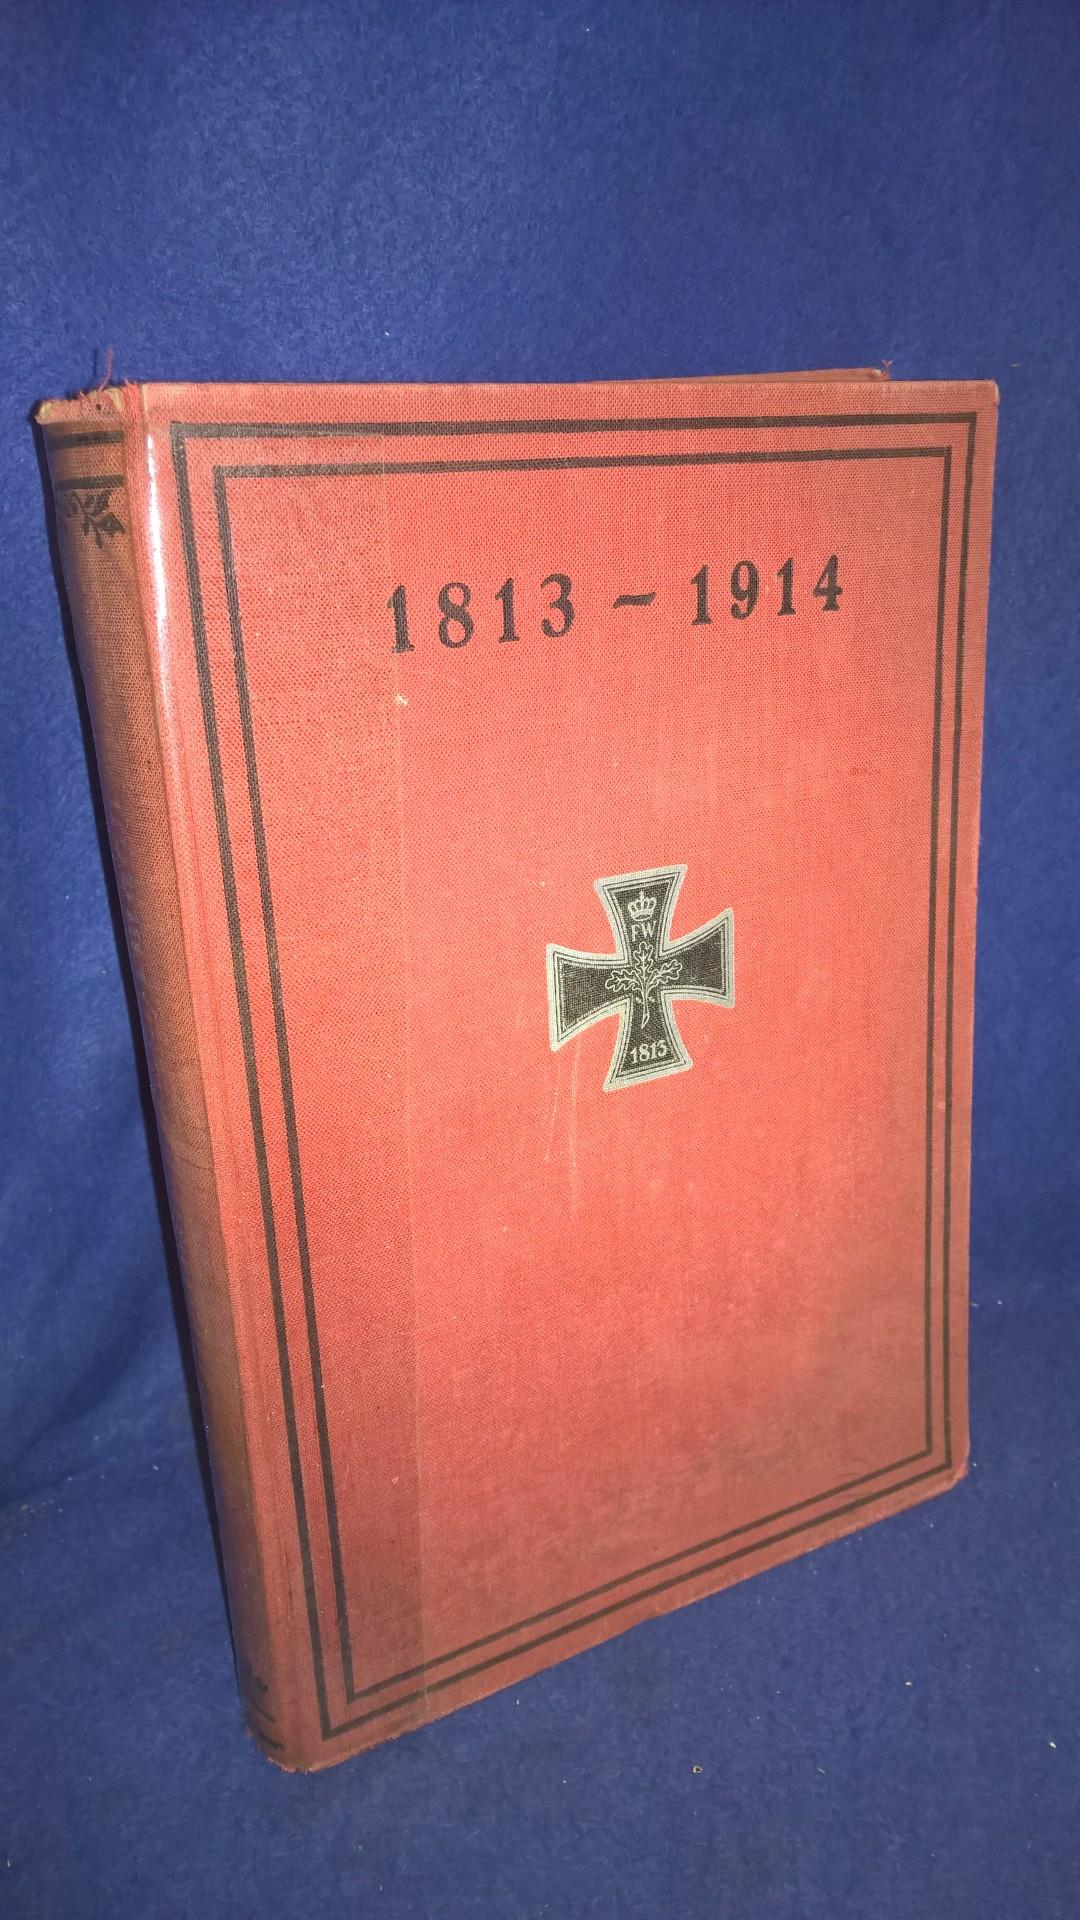 Deutschlands Wehrmacht 1813-1914. Ein Buch der Erinnerung an Deutschlands Erziehung durch Allgemeine Wehrpflicht.